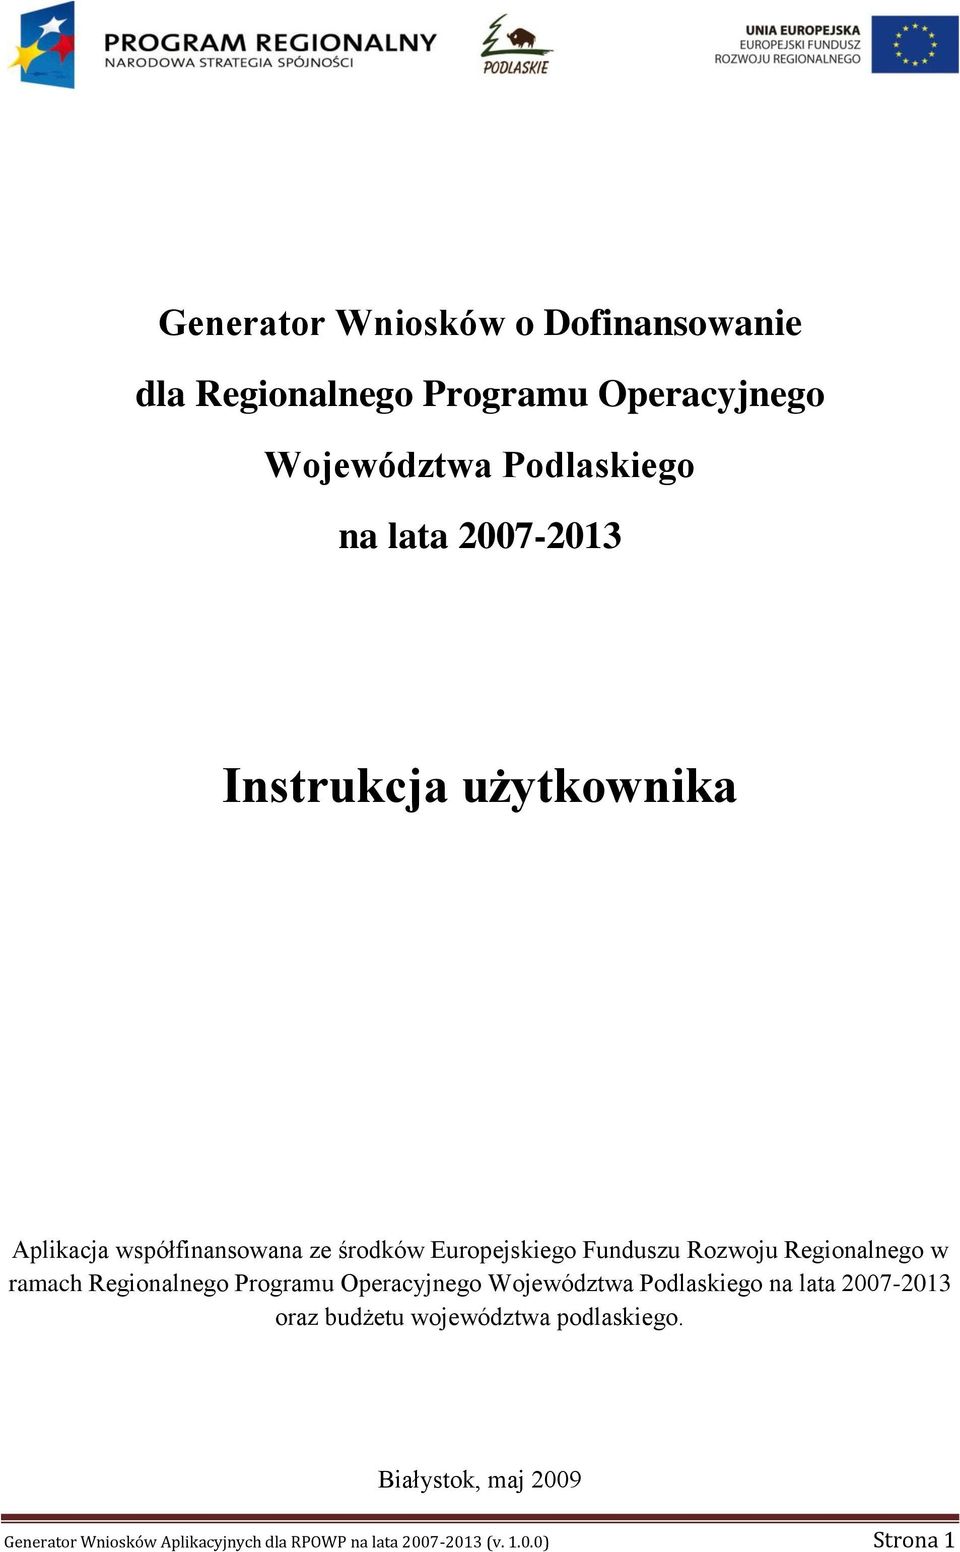 Regionalnego w ramach Regionalnego Programu Operacyjnego Województwa Podlaskiego na lata 2007-2013 oraz budżetu